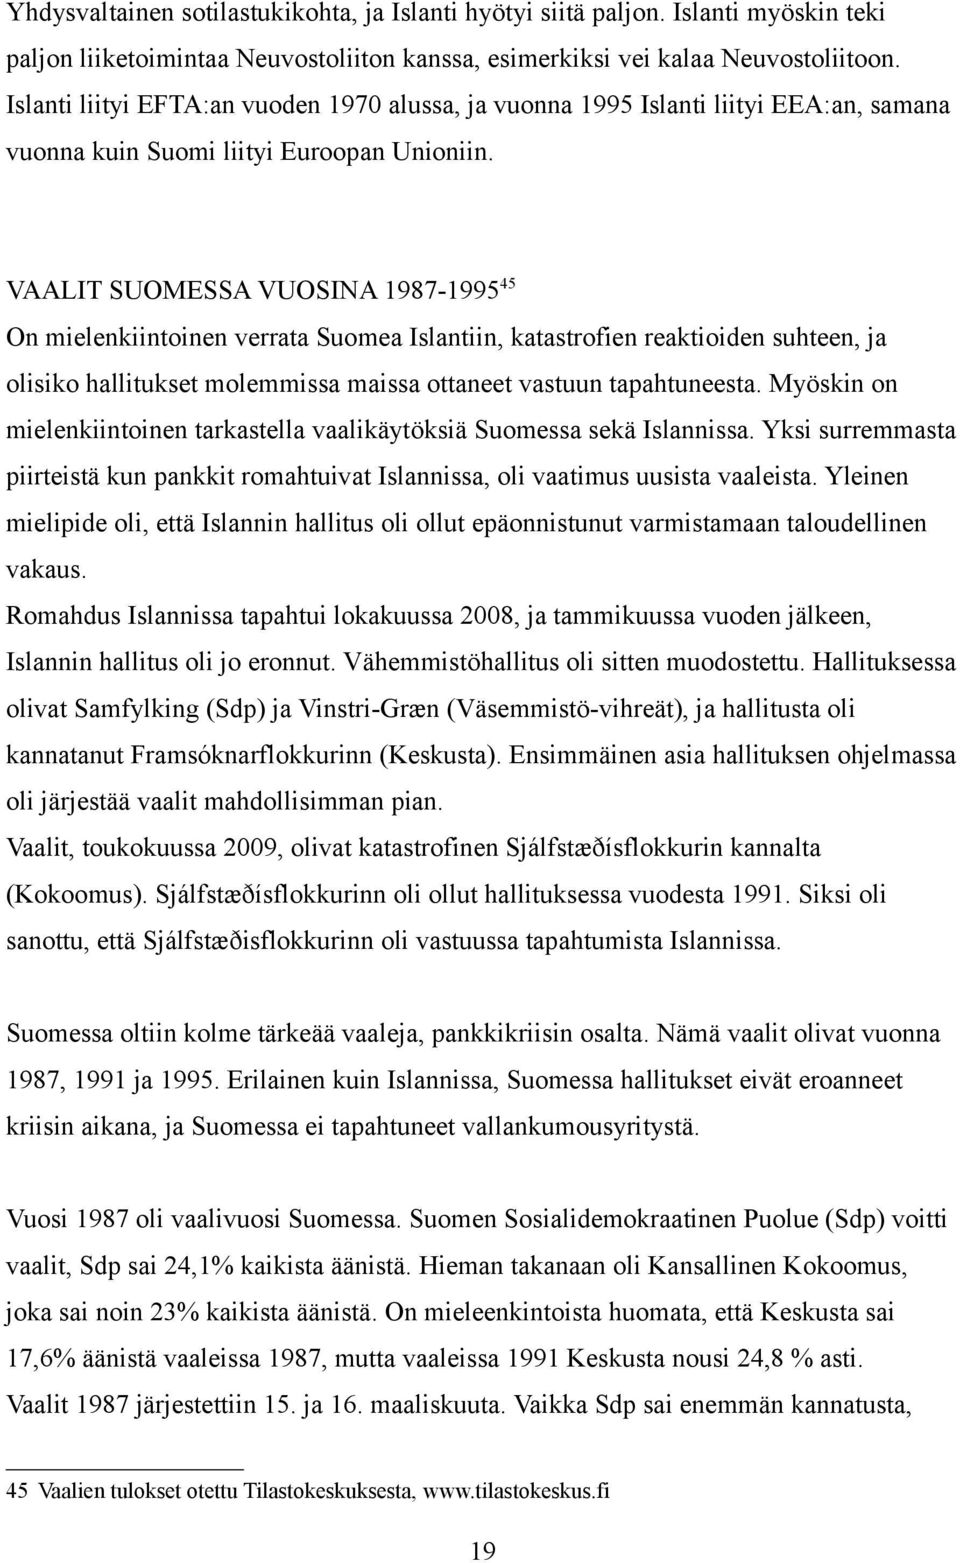 VAALIT SUOMESSA VUOSINA 1987-1995 45 On mielenkiintoinen verrata Suomea Islantiin, katastrofien reaktioiden suhteen, ja olisiko hallitukset molemmissa maissa ottaneet vastuun tapahtuneesta.